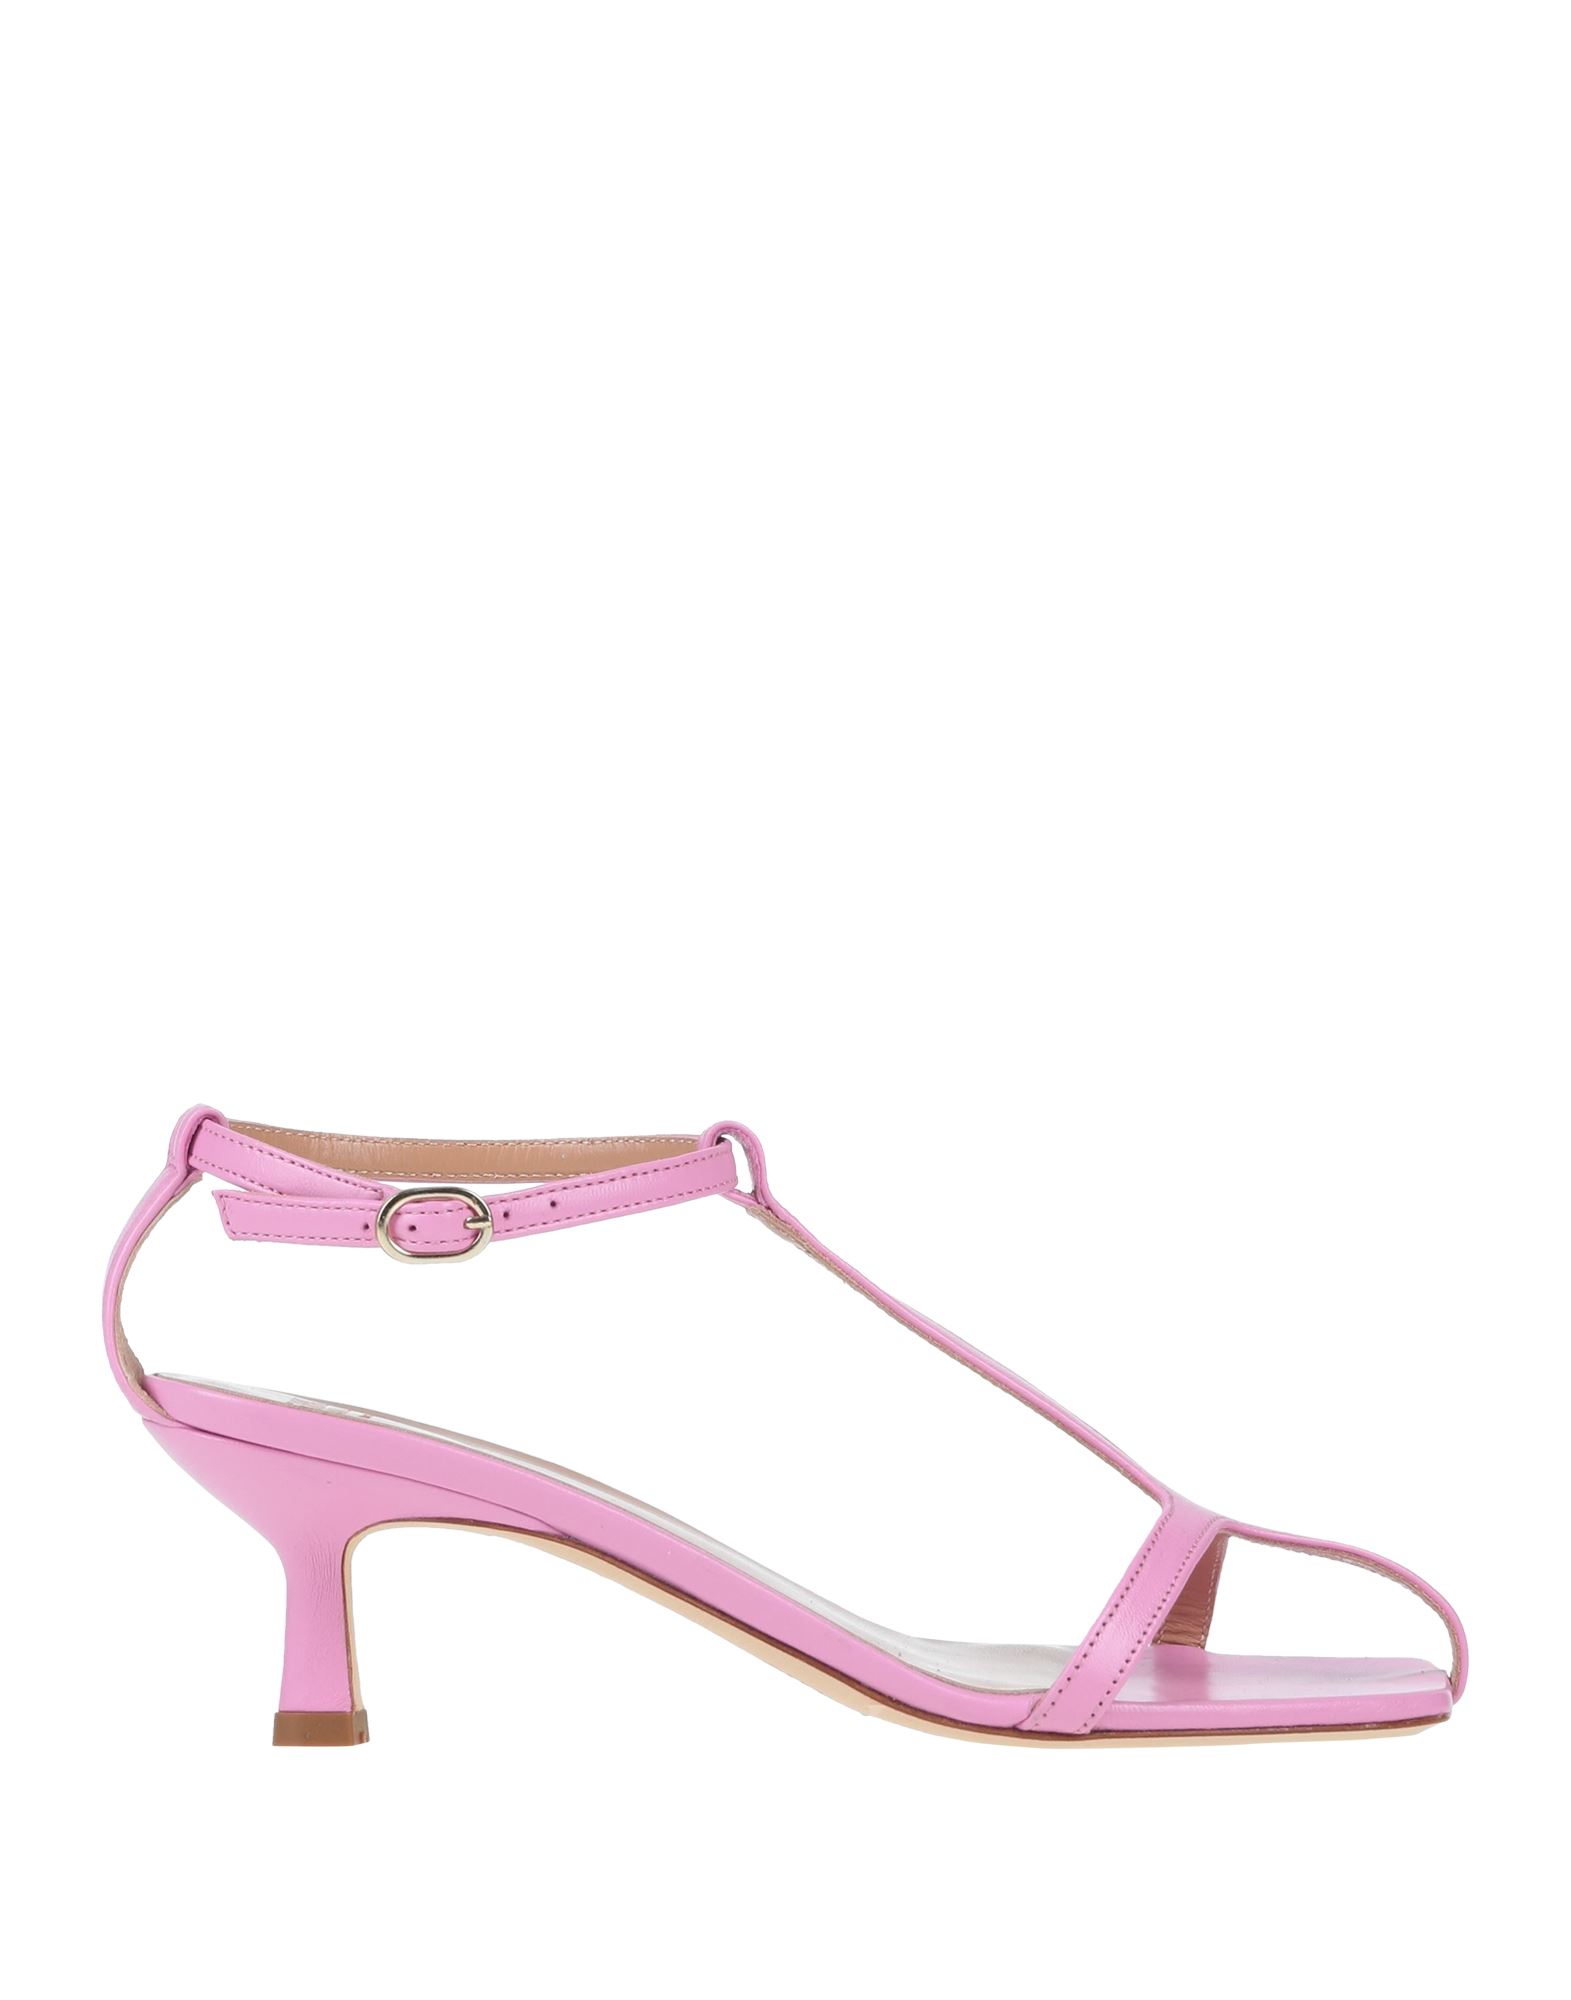 Erika Cavallini Sandals In Pink